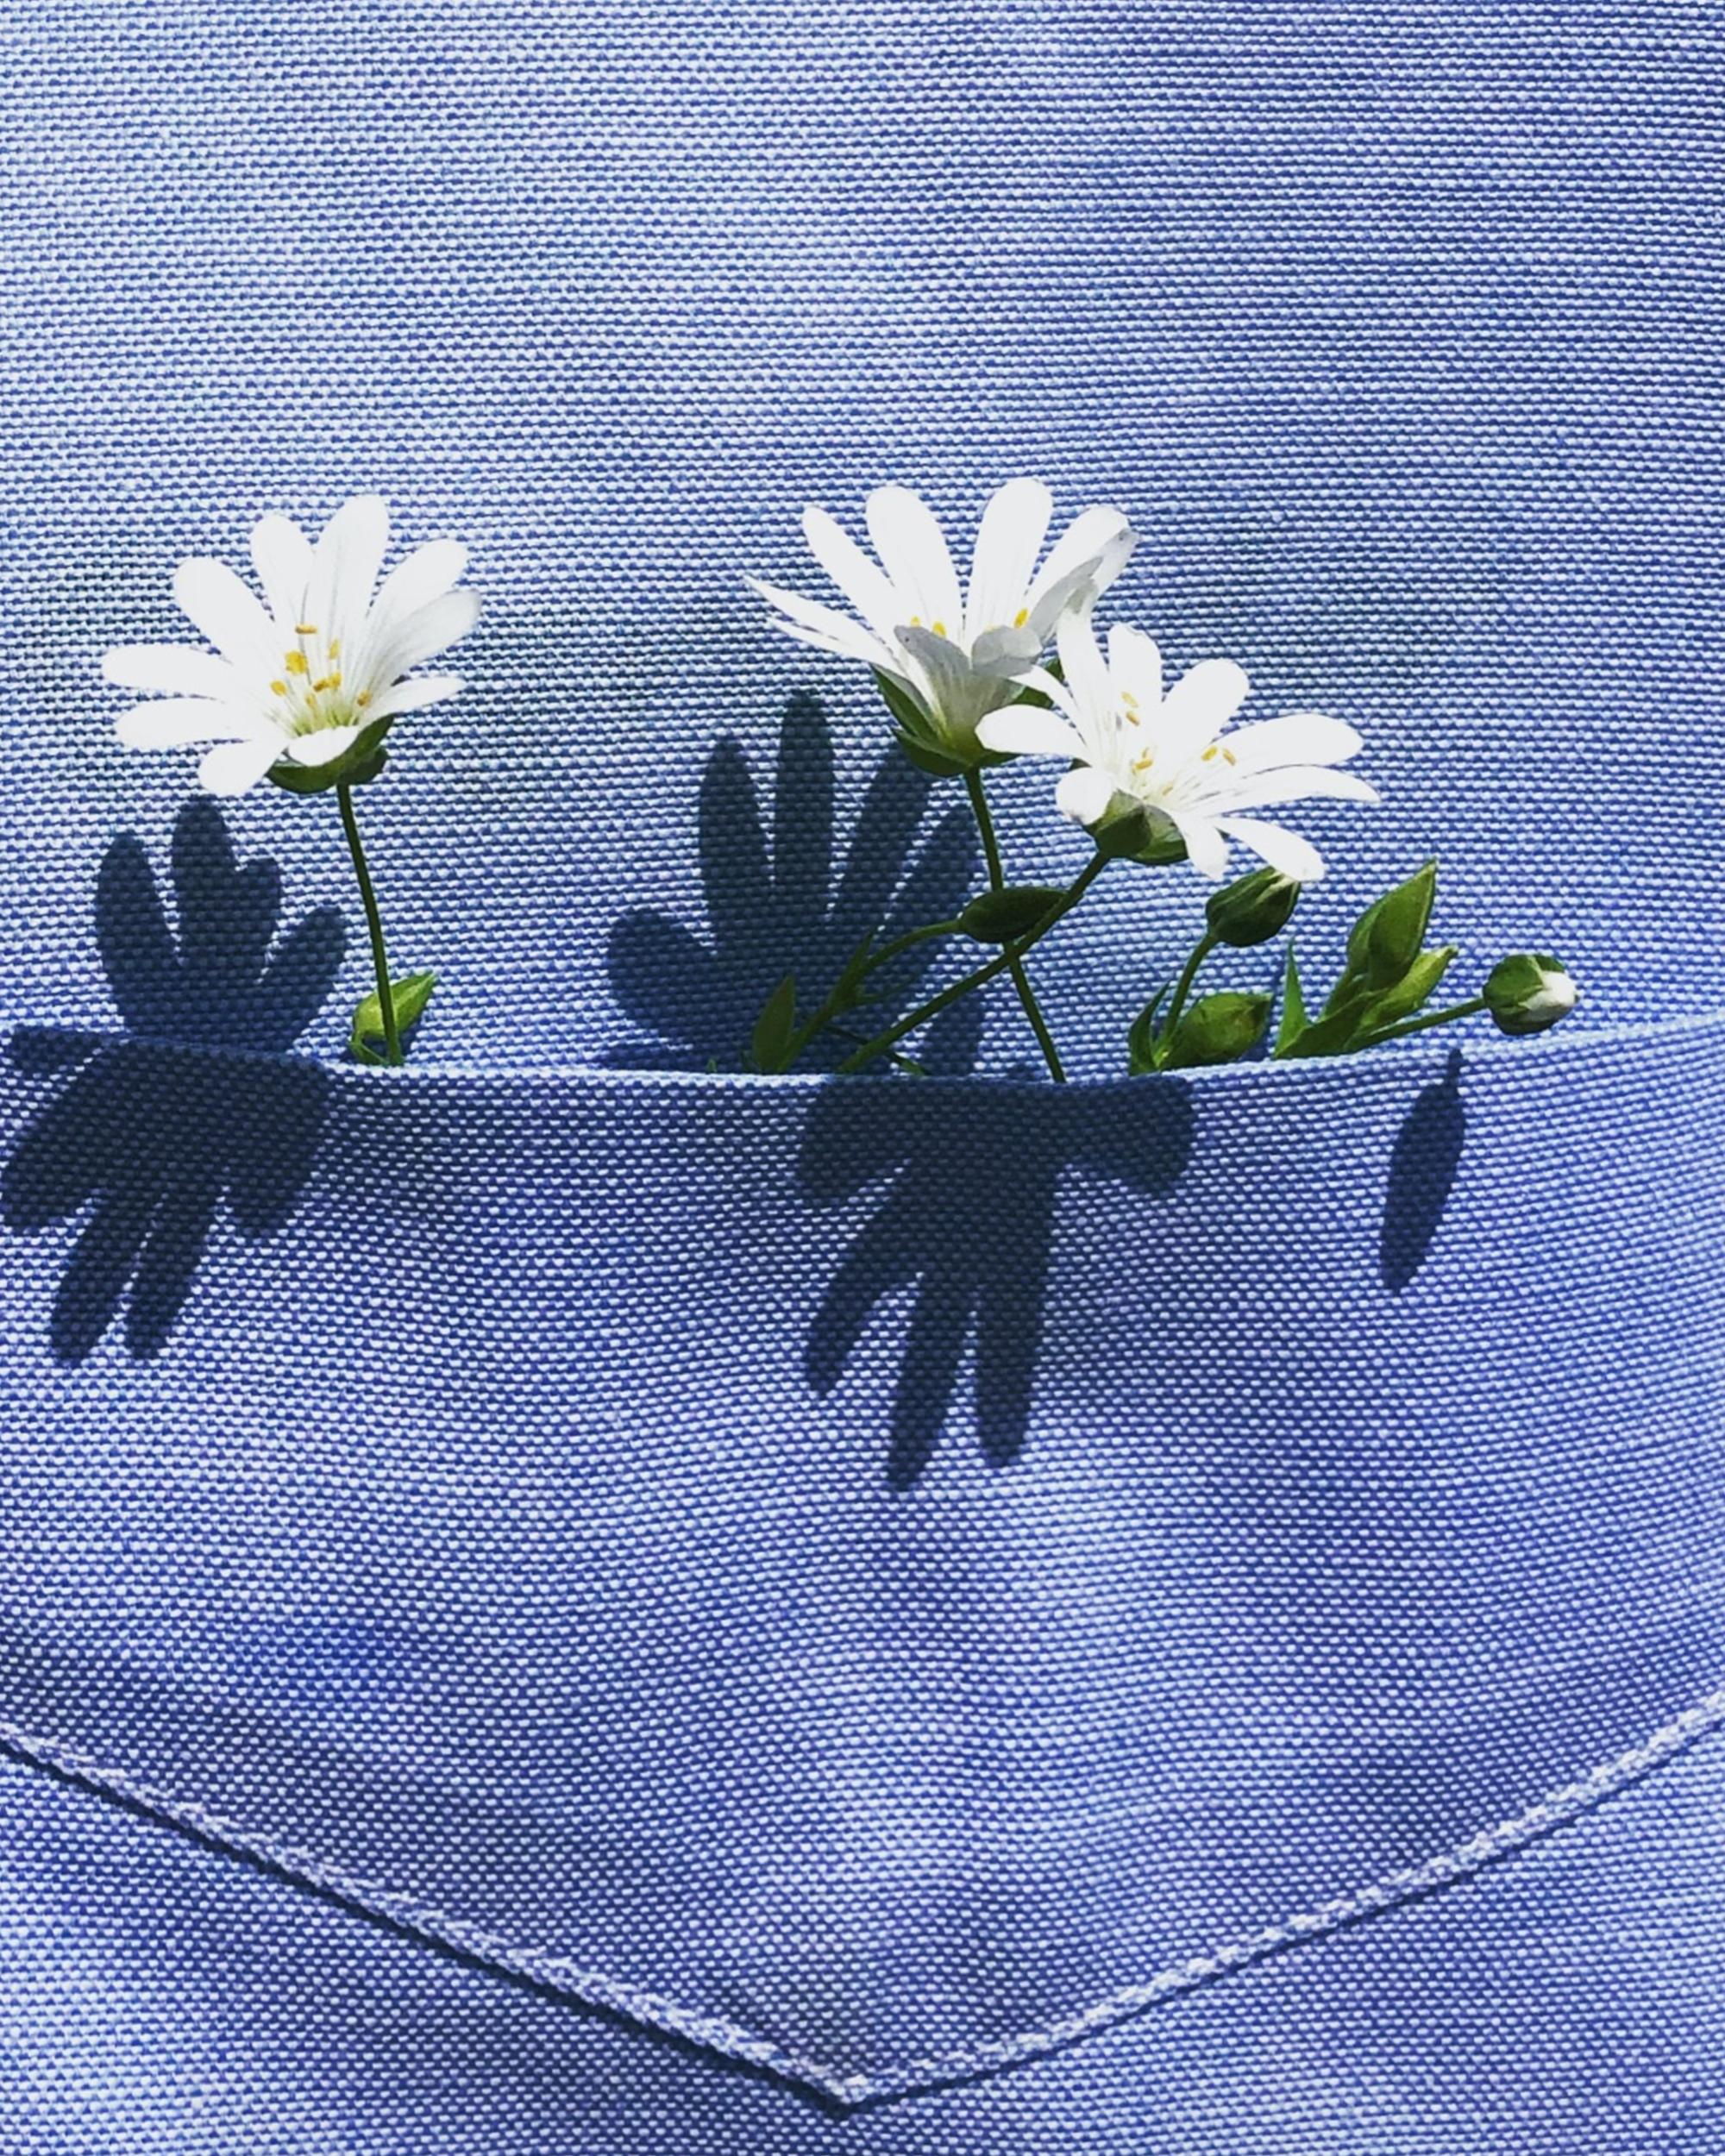 Flowers in pocket